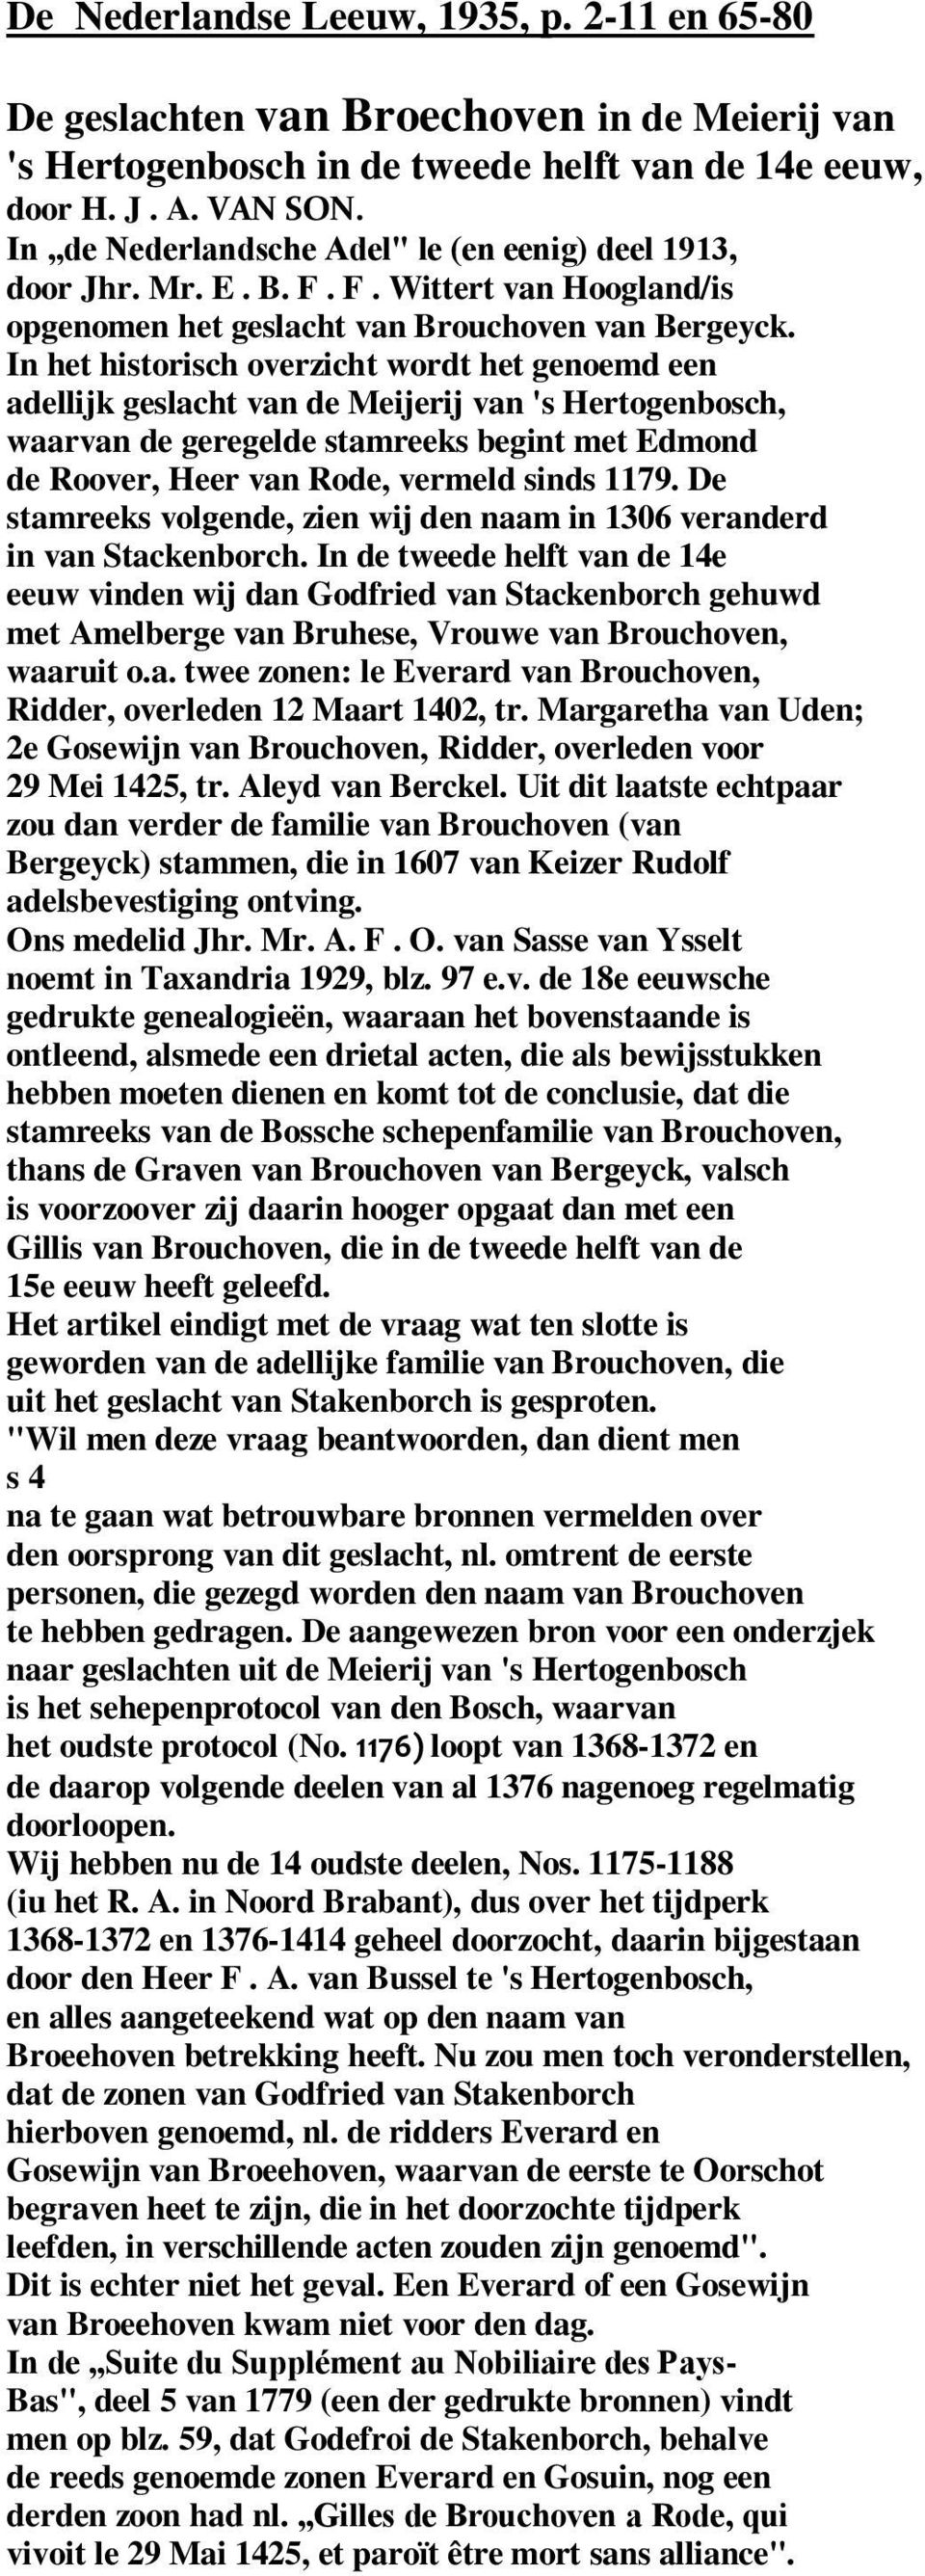 In het historisch overzicht wordt het genoemd een adellijk geslacht van de Meijerij van 's Hertogenbosch, waarvan de geregelde stamreeks begint met Edmond de Roover, Heer van Rode, vermeld sinds 1179.